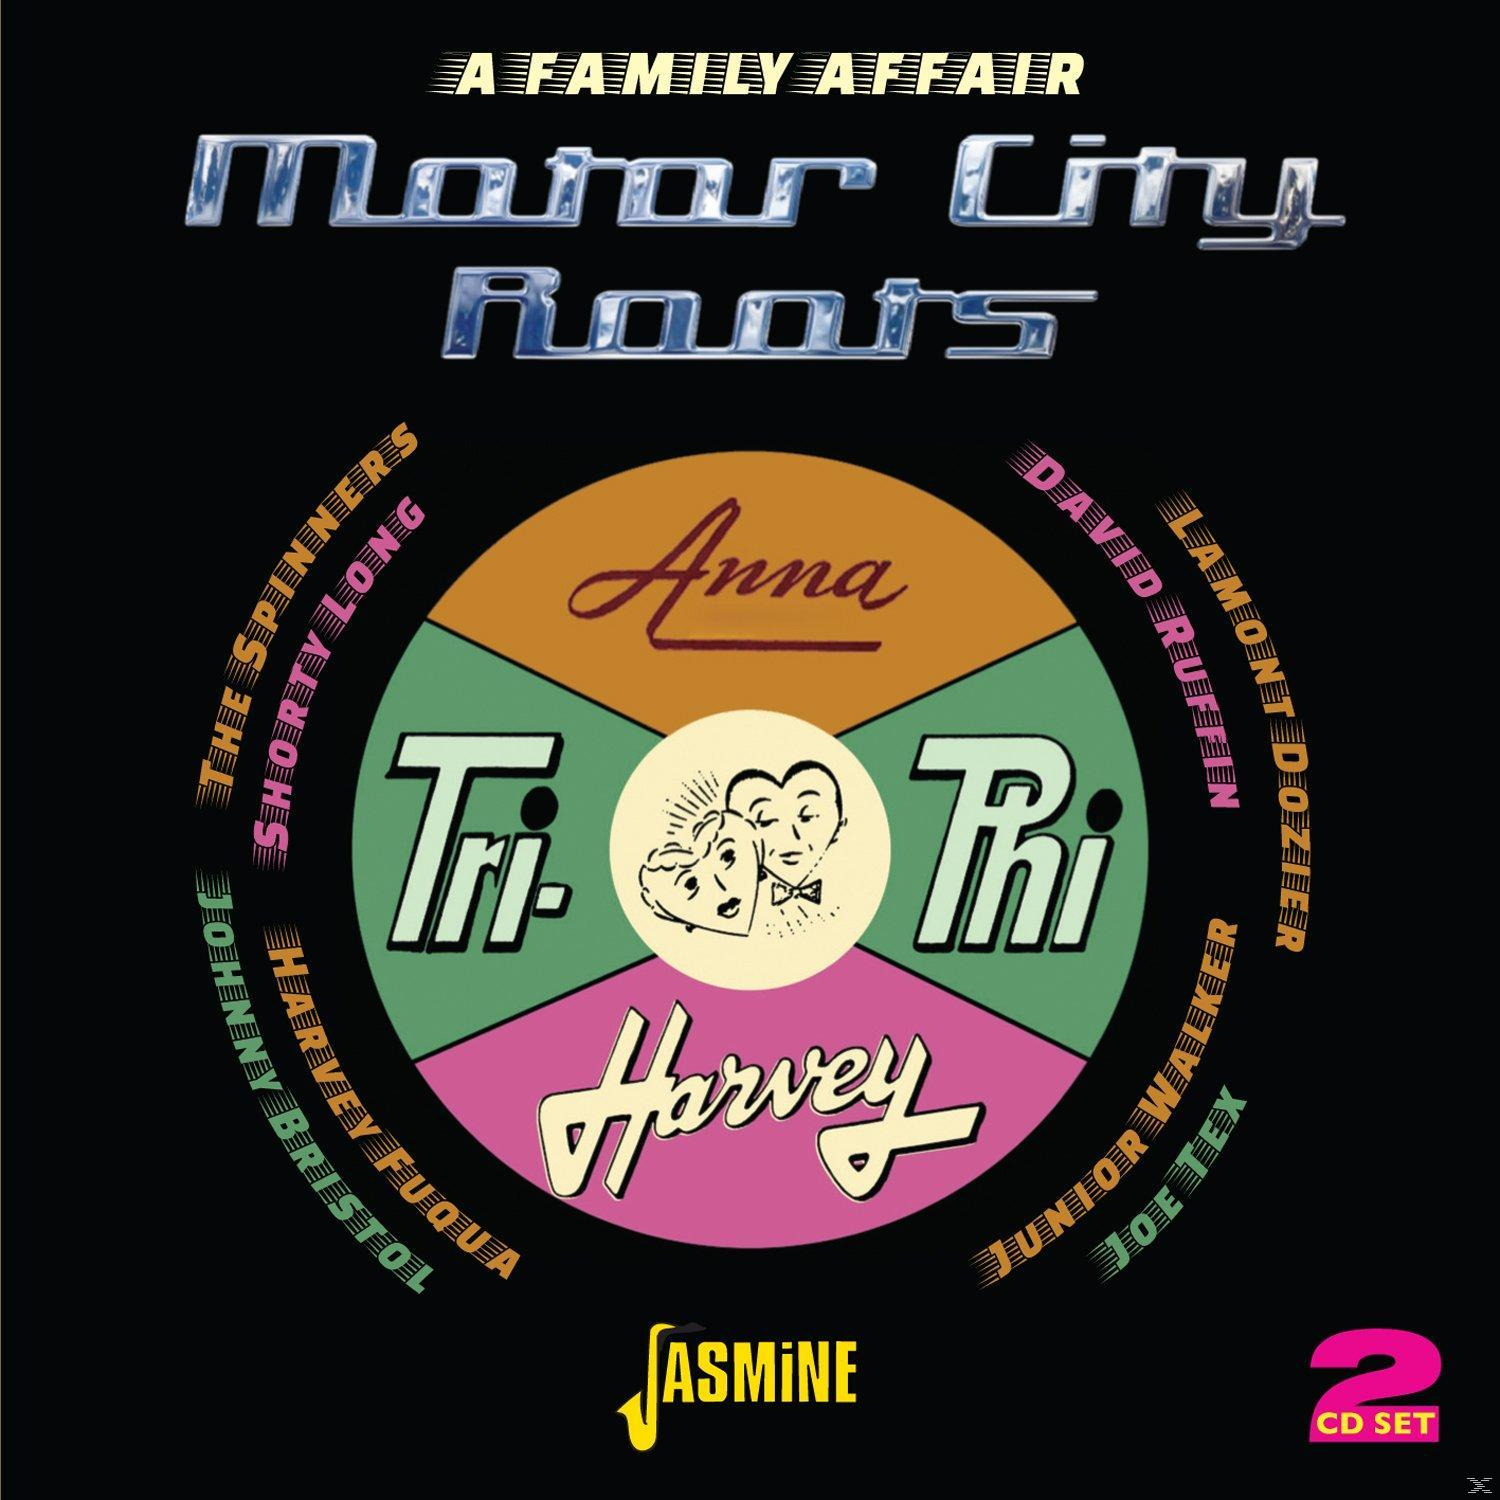 Family - VARIOUS - A (CD) City Affair - Motor